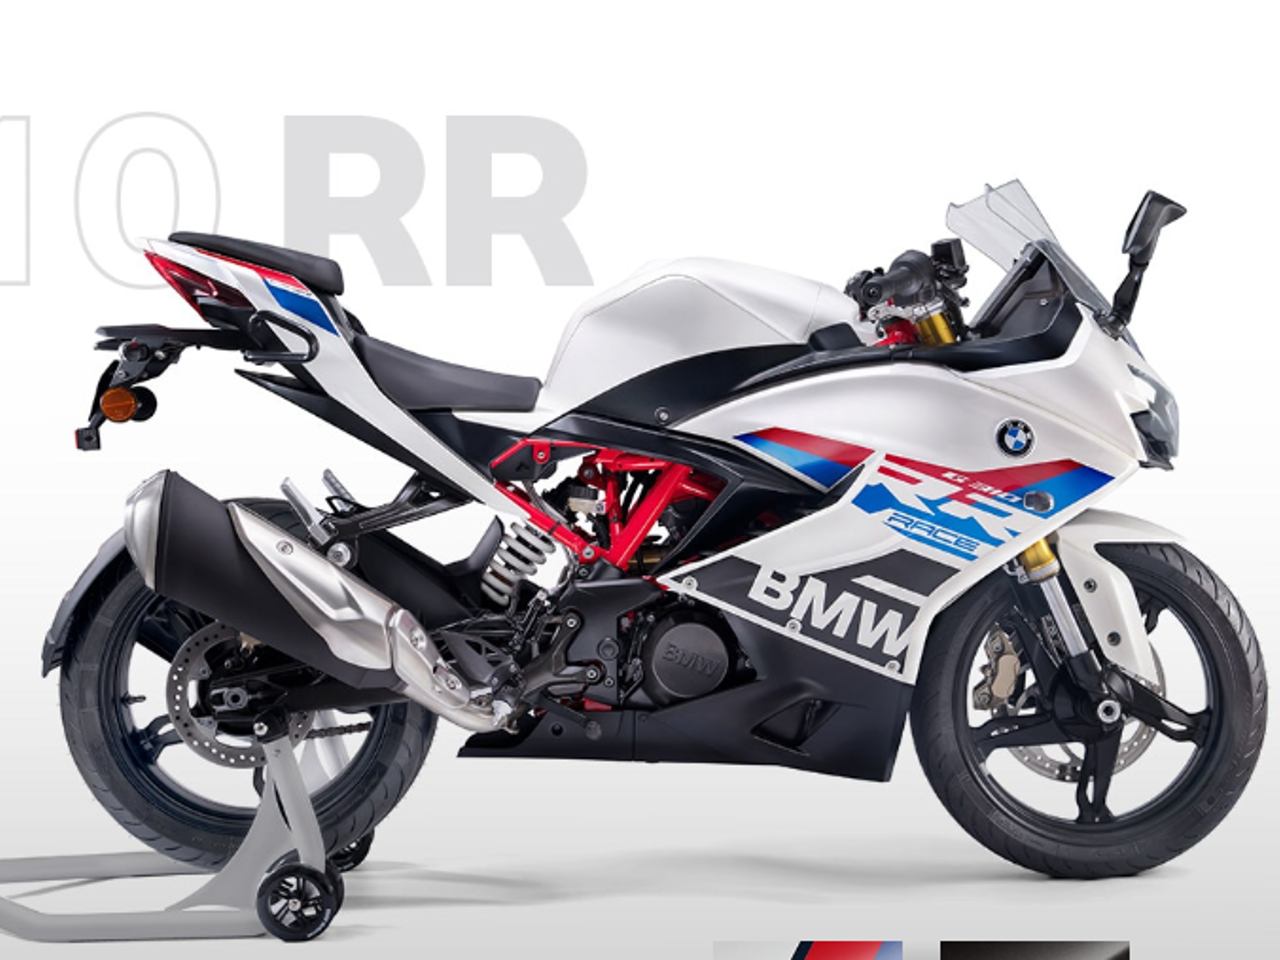 BMW G 310 RR: conheça a nova moto esportiva 'popular' da marca